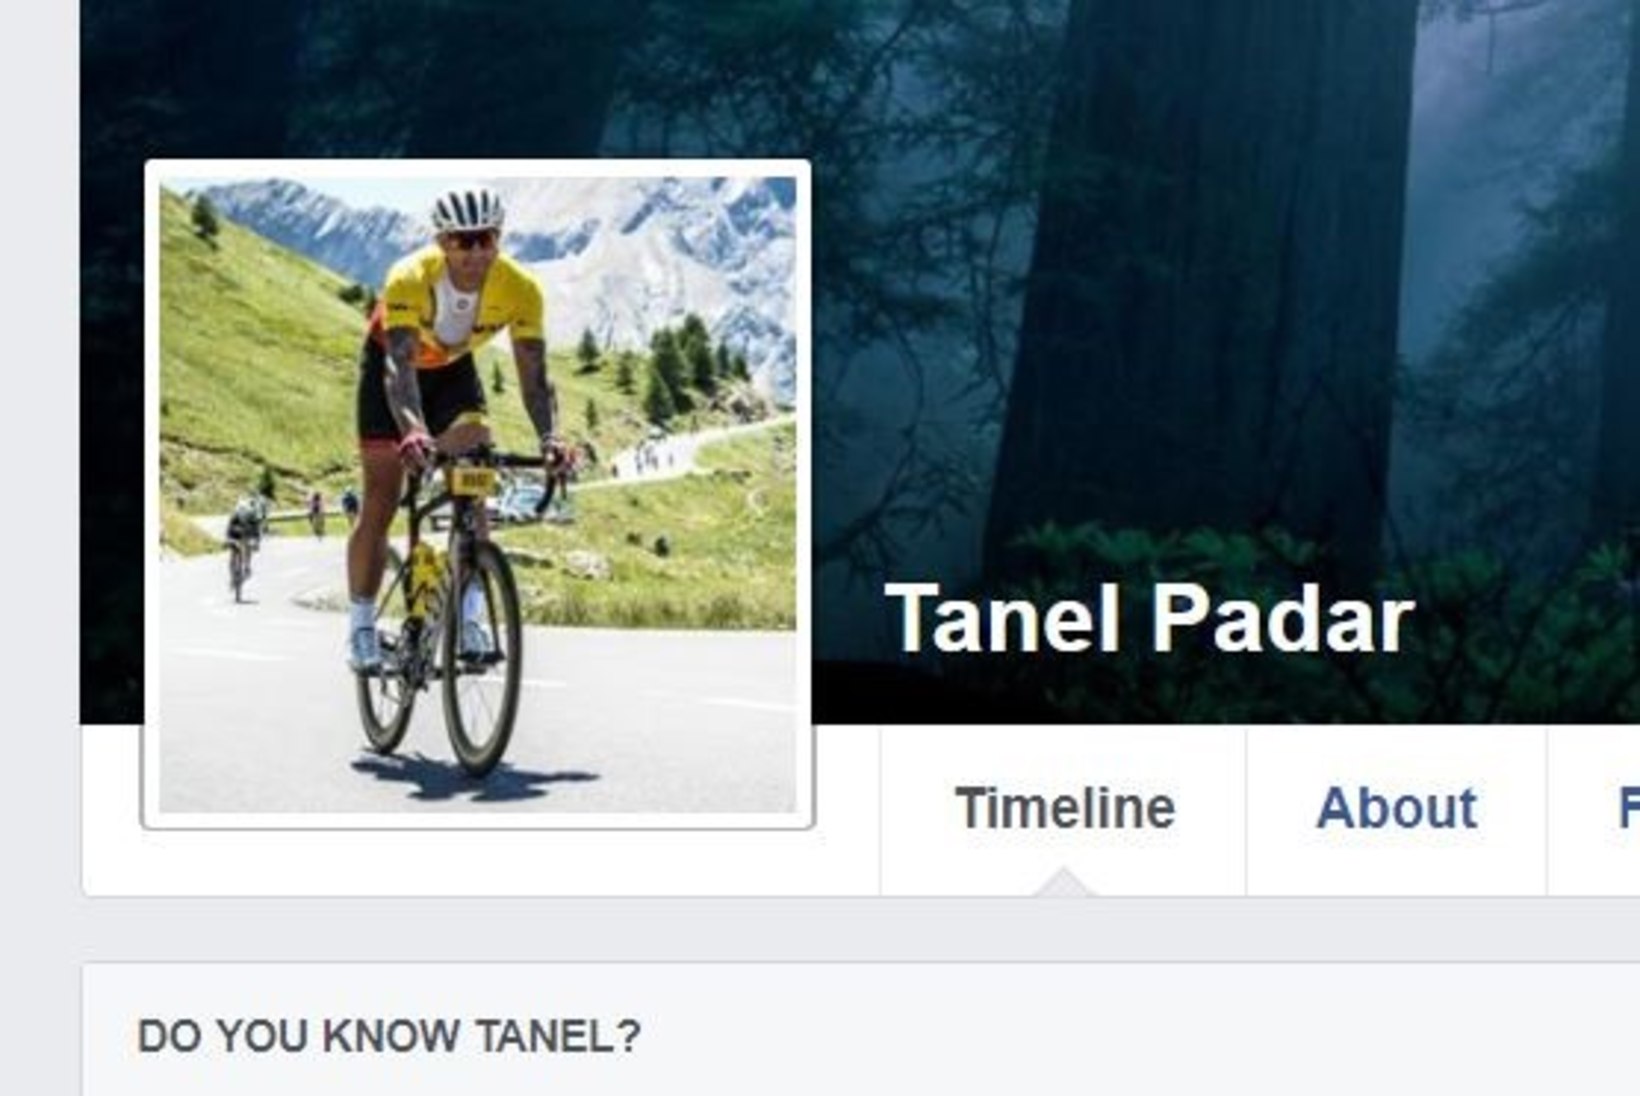 ASI AMETLIK! Tanel Padar on taas vaba mees! 